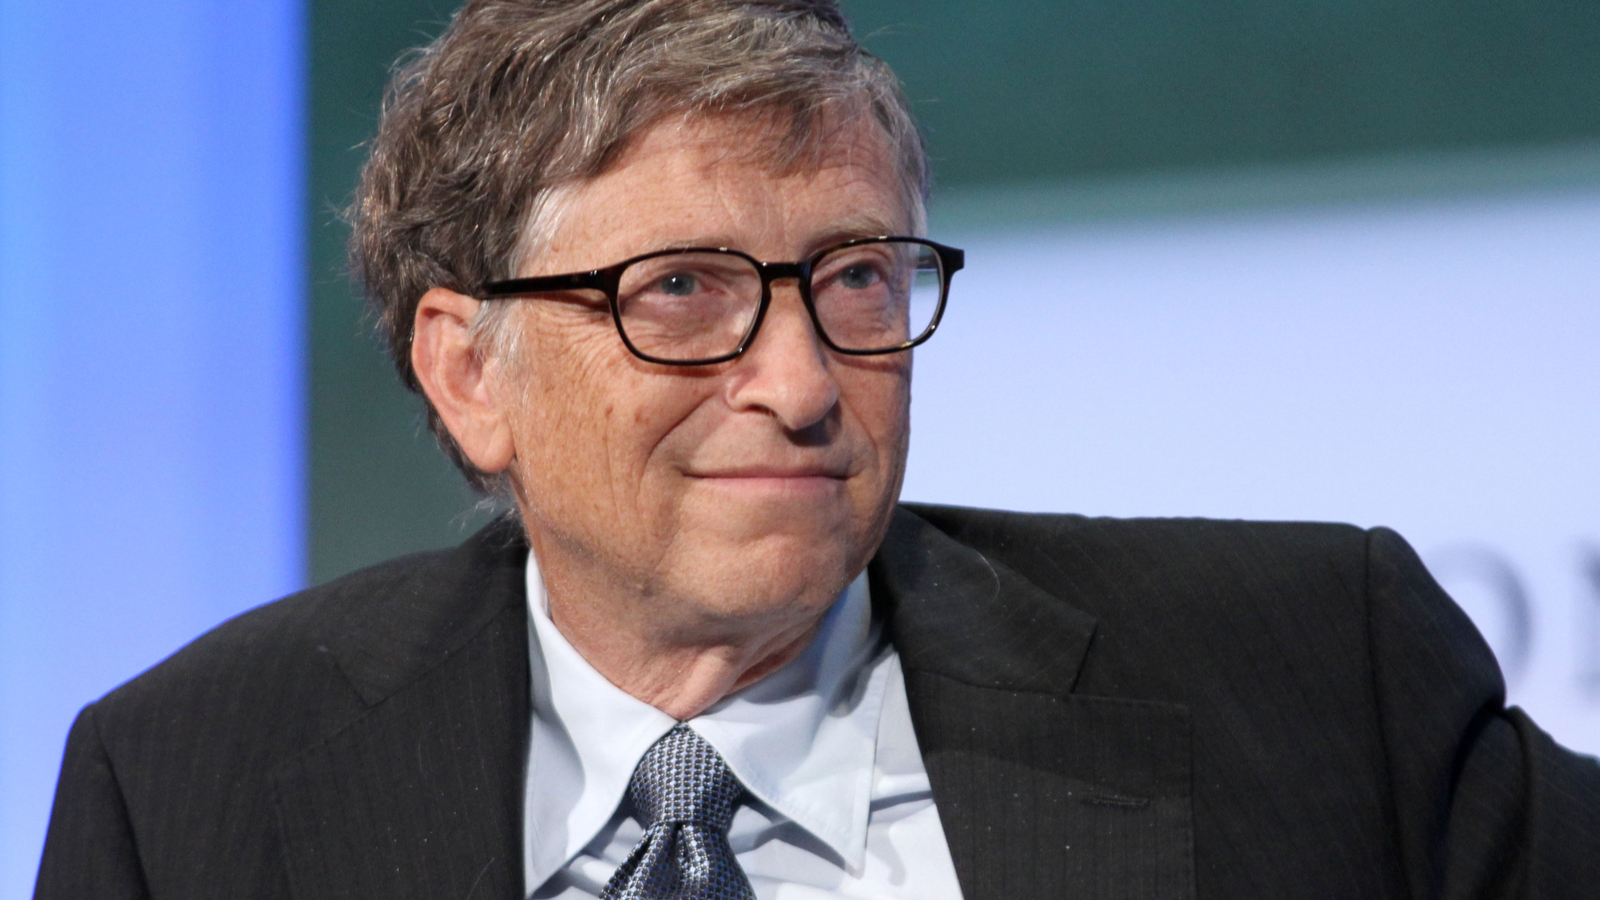 Bill Gates qualifie l'acquisition de Tik Tok par Microsoft de 